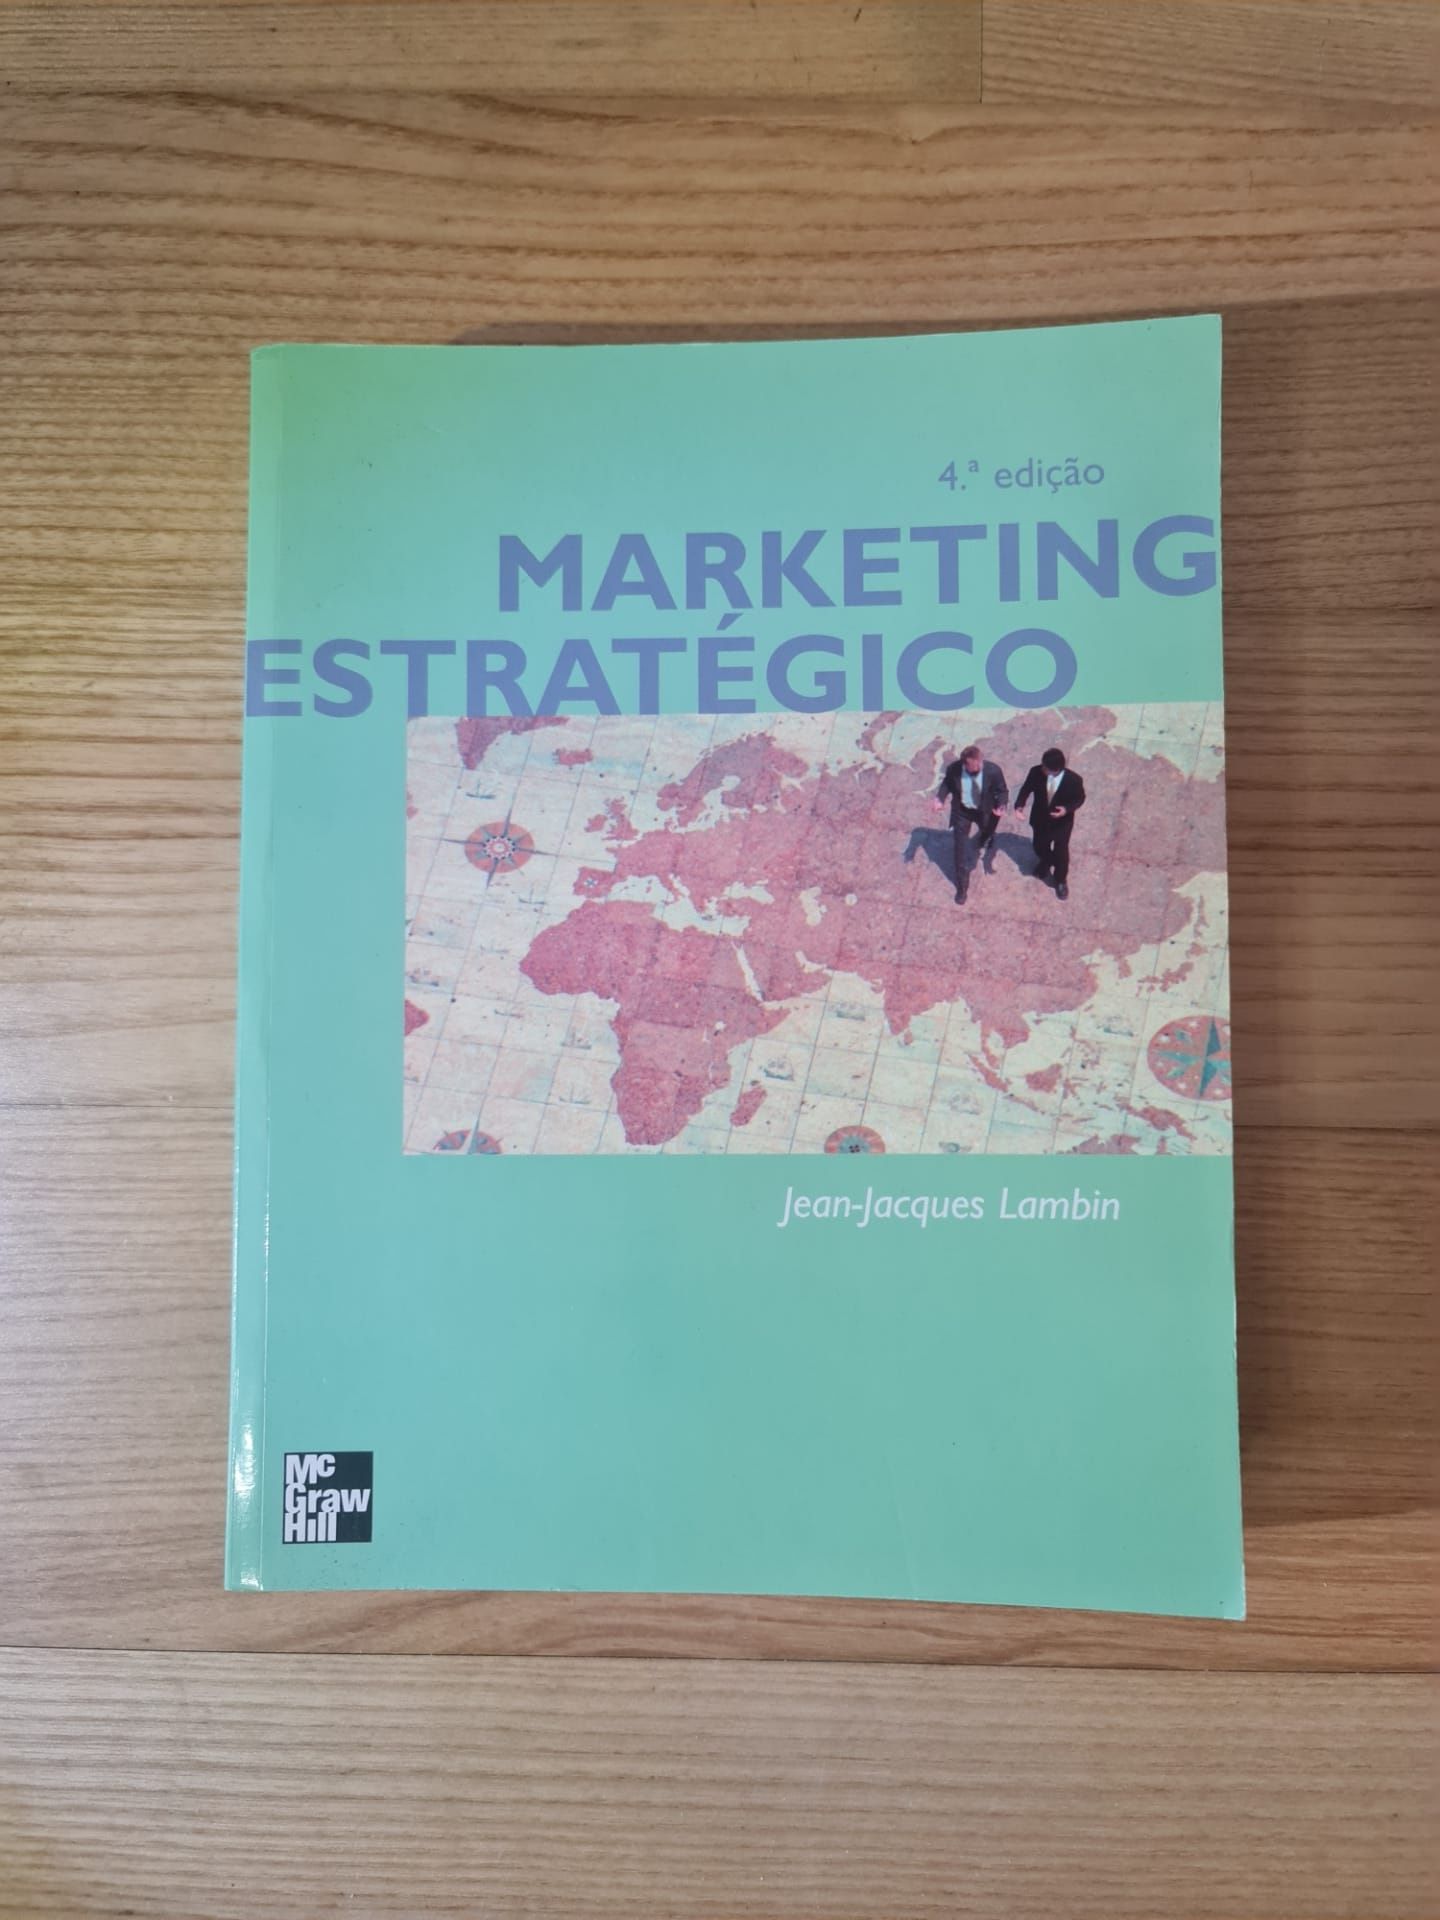 Marketing Estratégico - Jean-Jacques Lambin 4° Edição